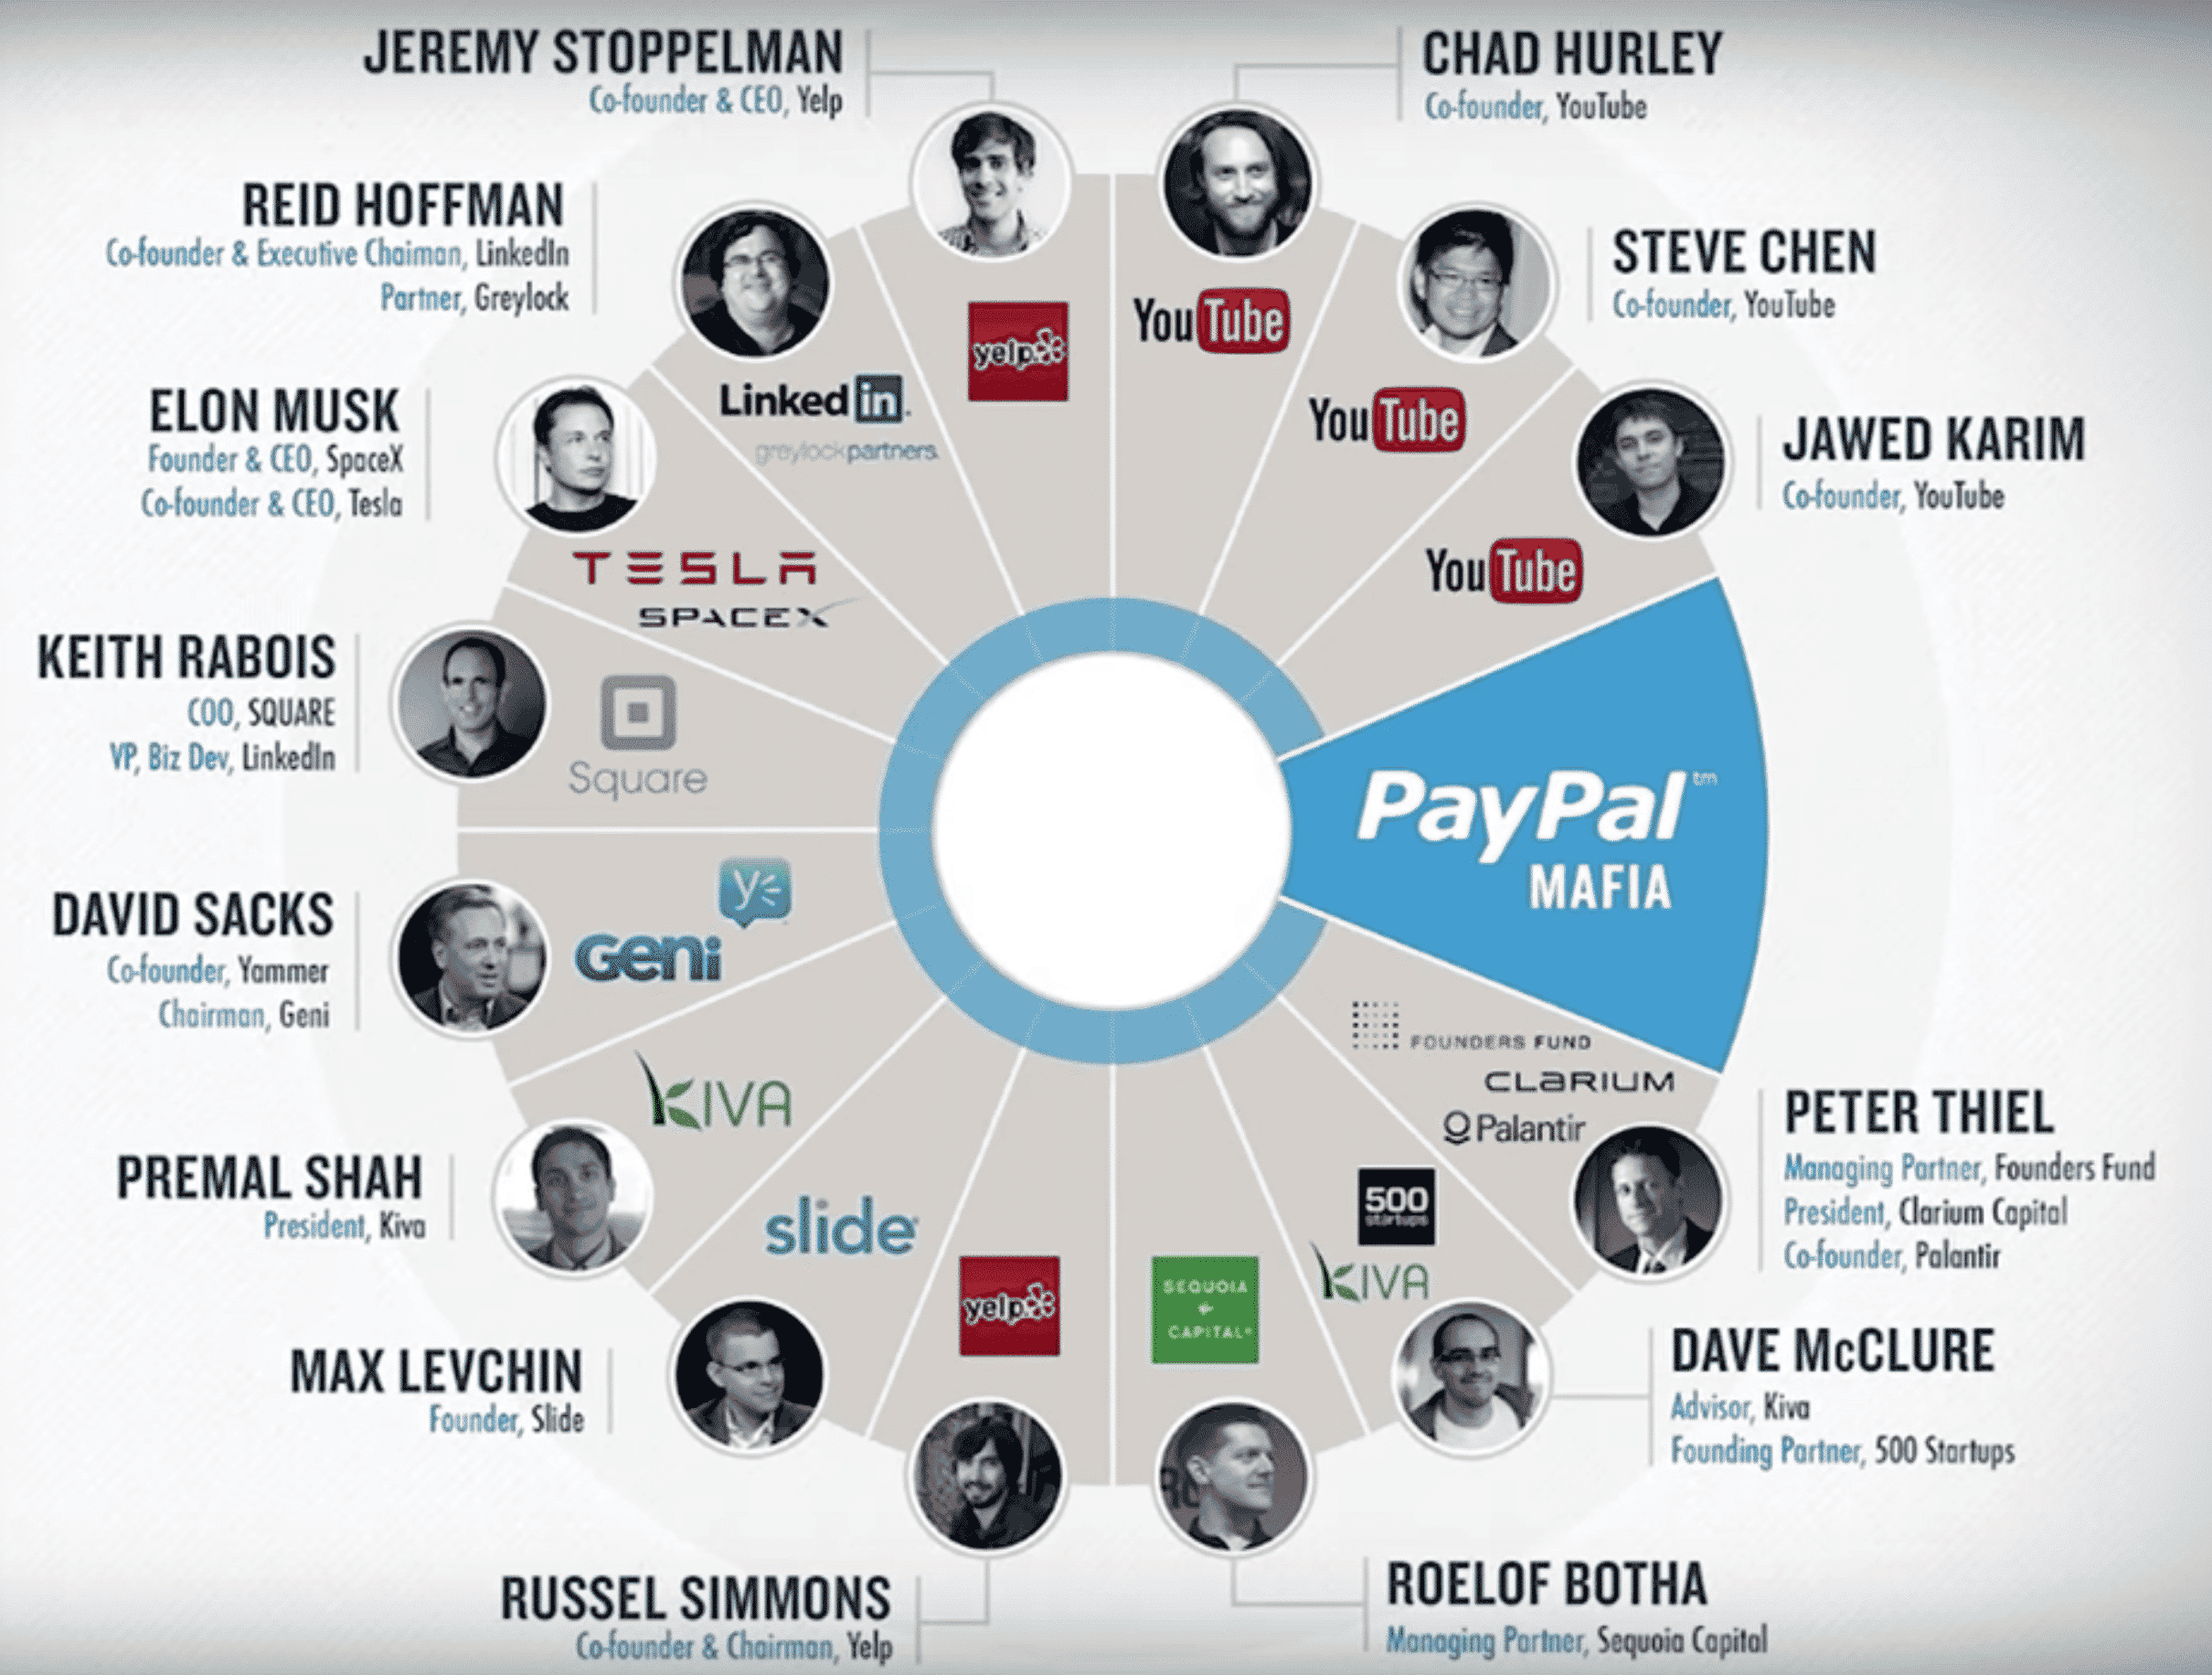 PayPal Mafia